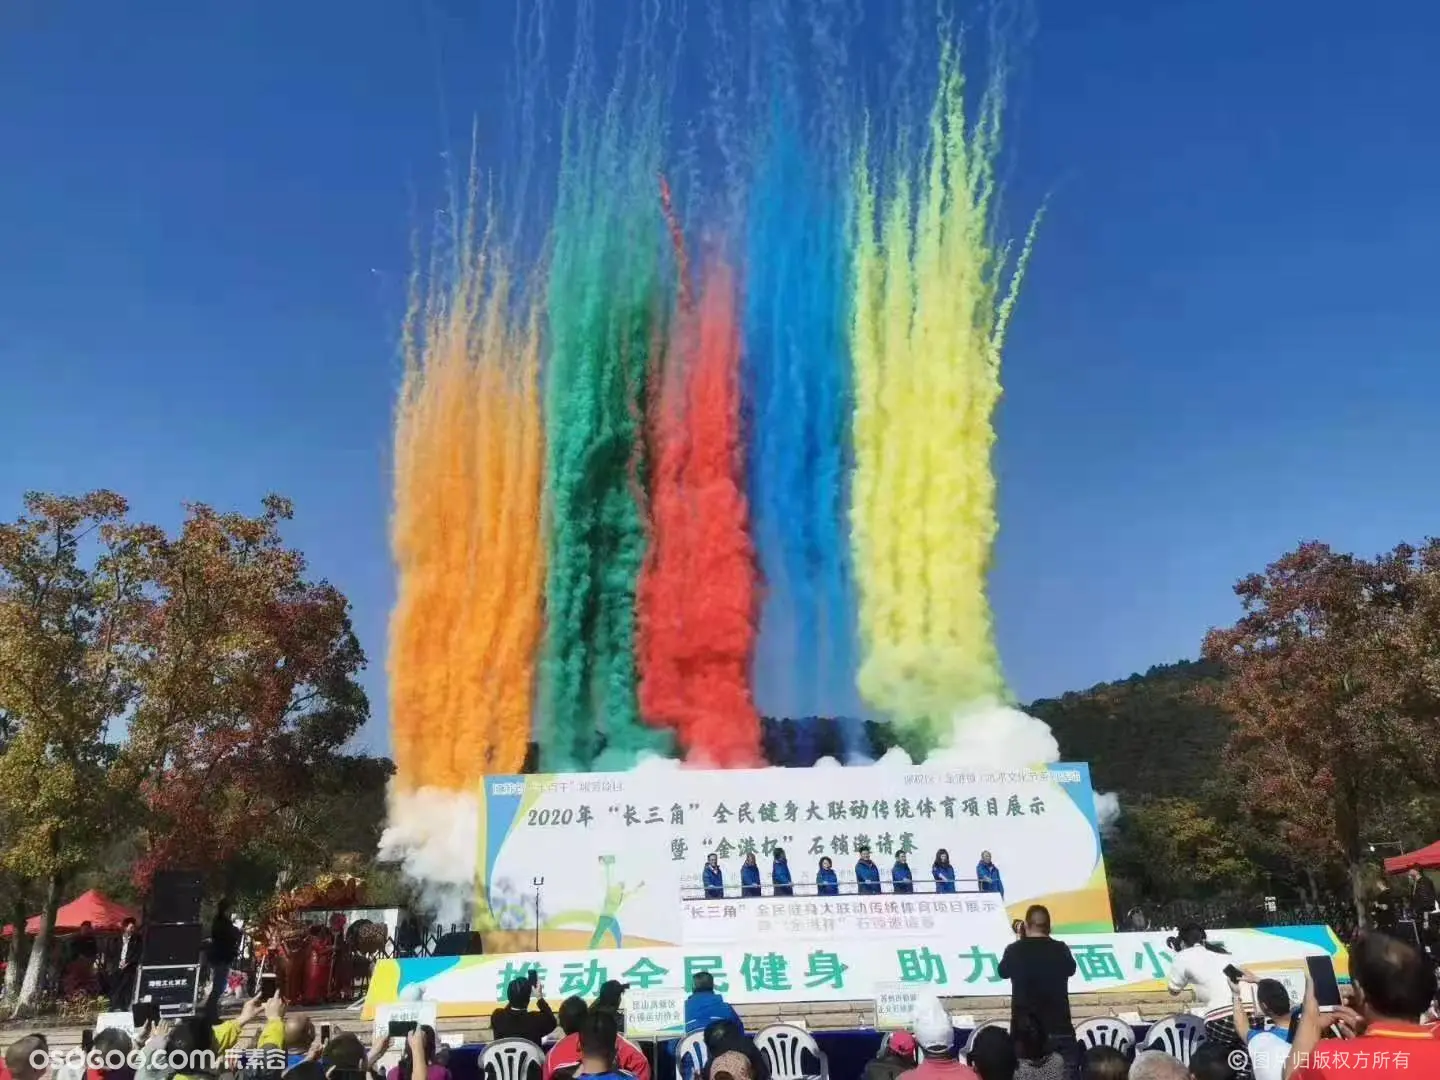 安阳市庆典发布会浇水干冰发光树 花开富贵启动道具出租